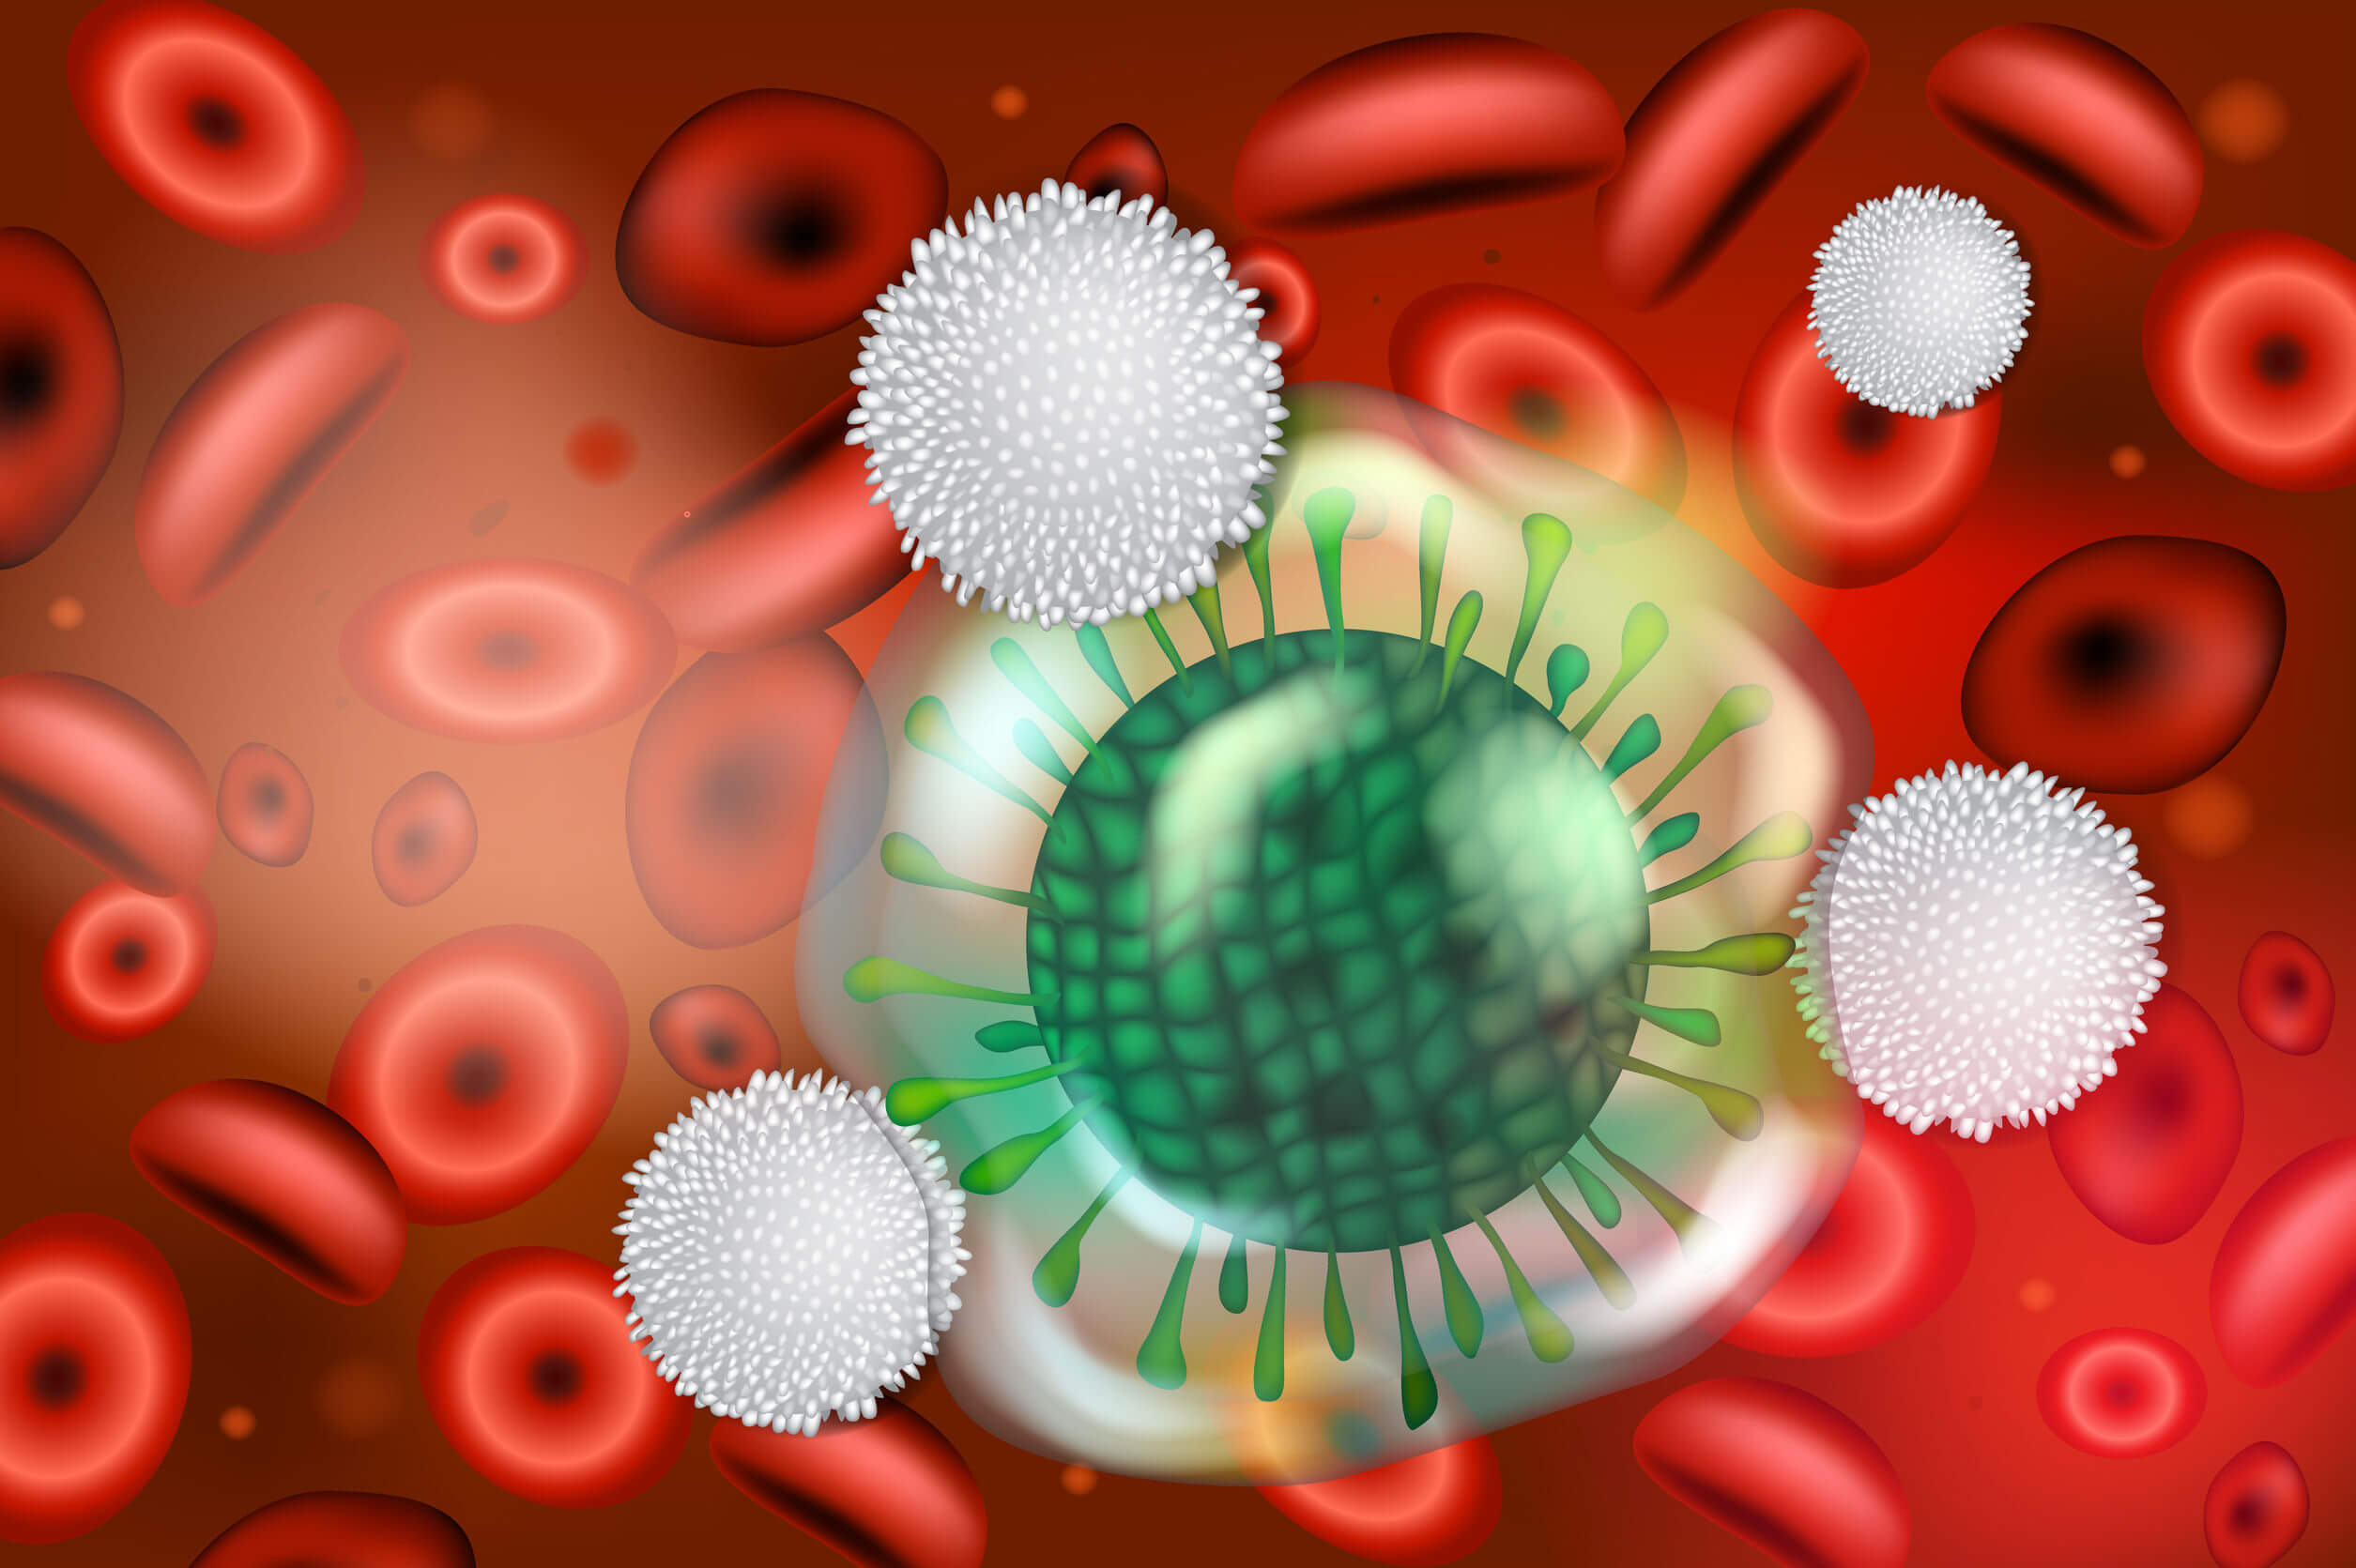 As causas e fatores de risco da anafilaxia incluem aspectos relacionados ao sistema imunológico